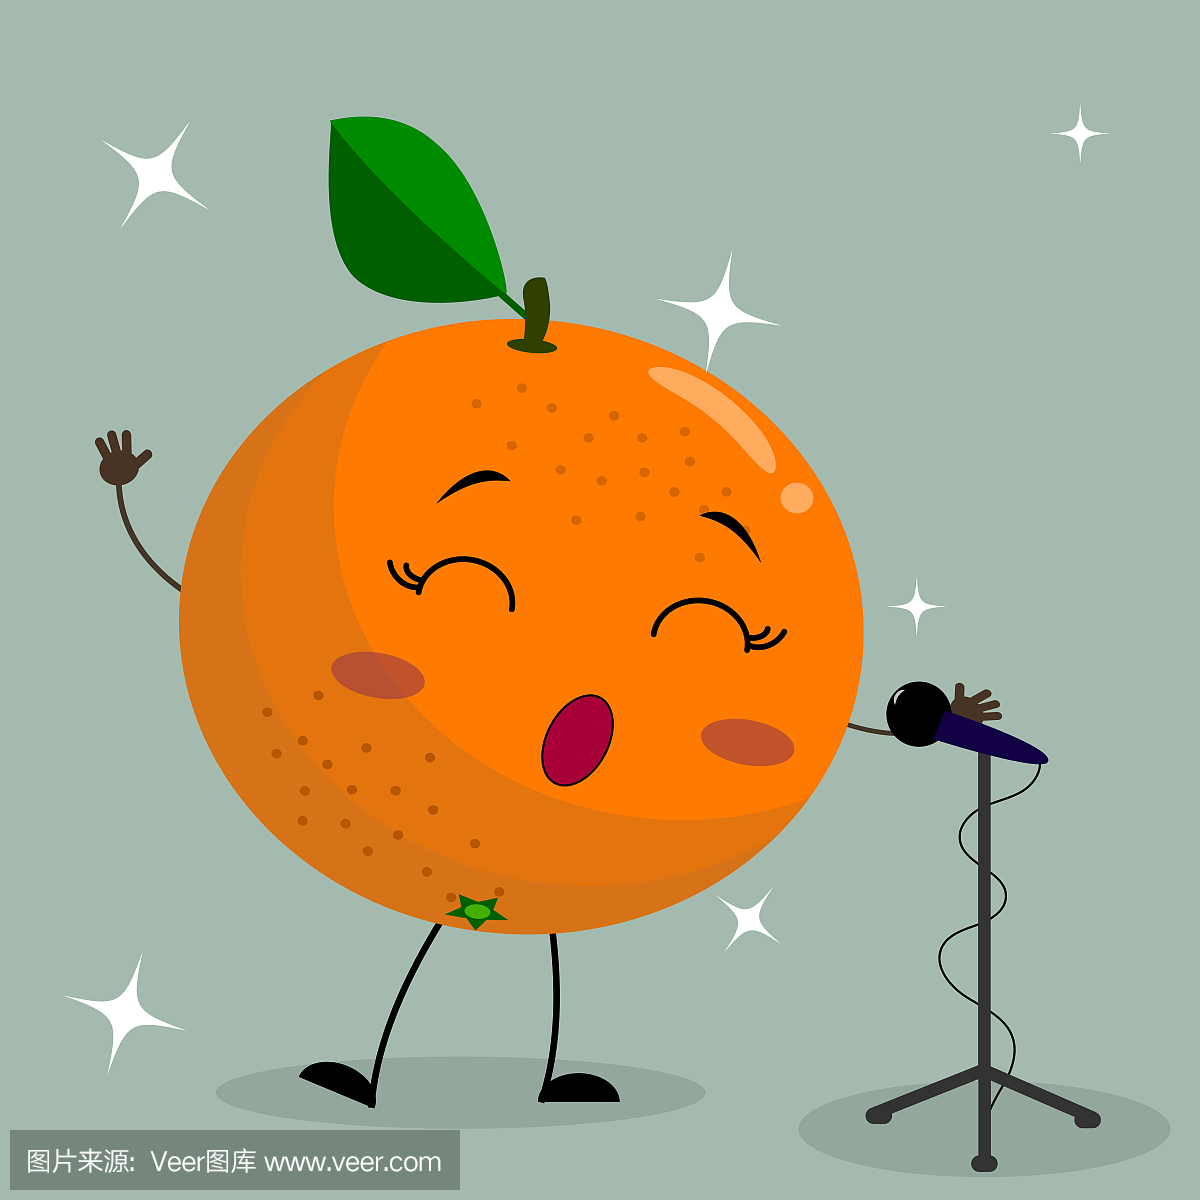 橙色卡通风格的笑脸唱着麦克风。